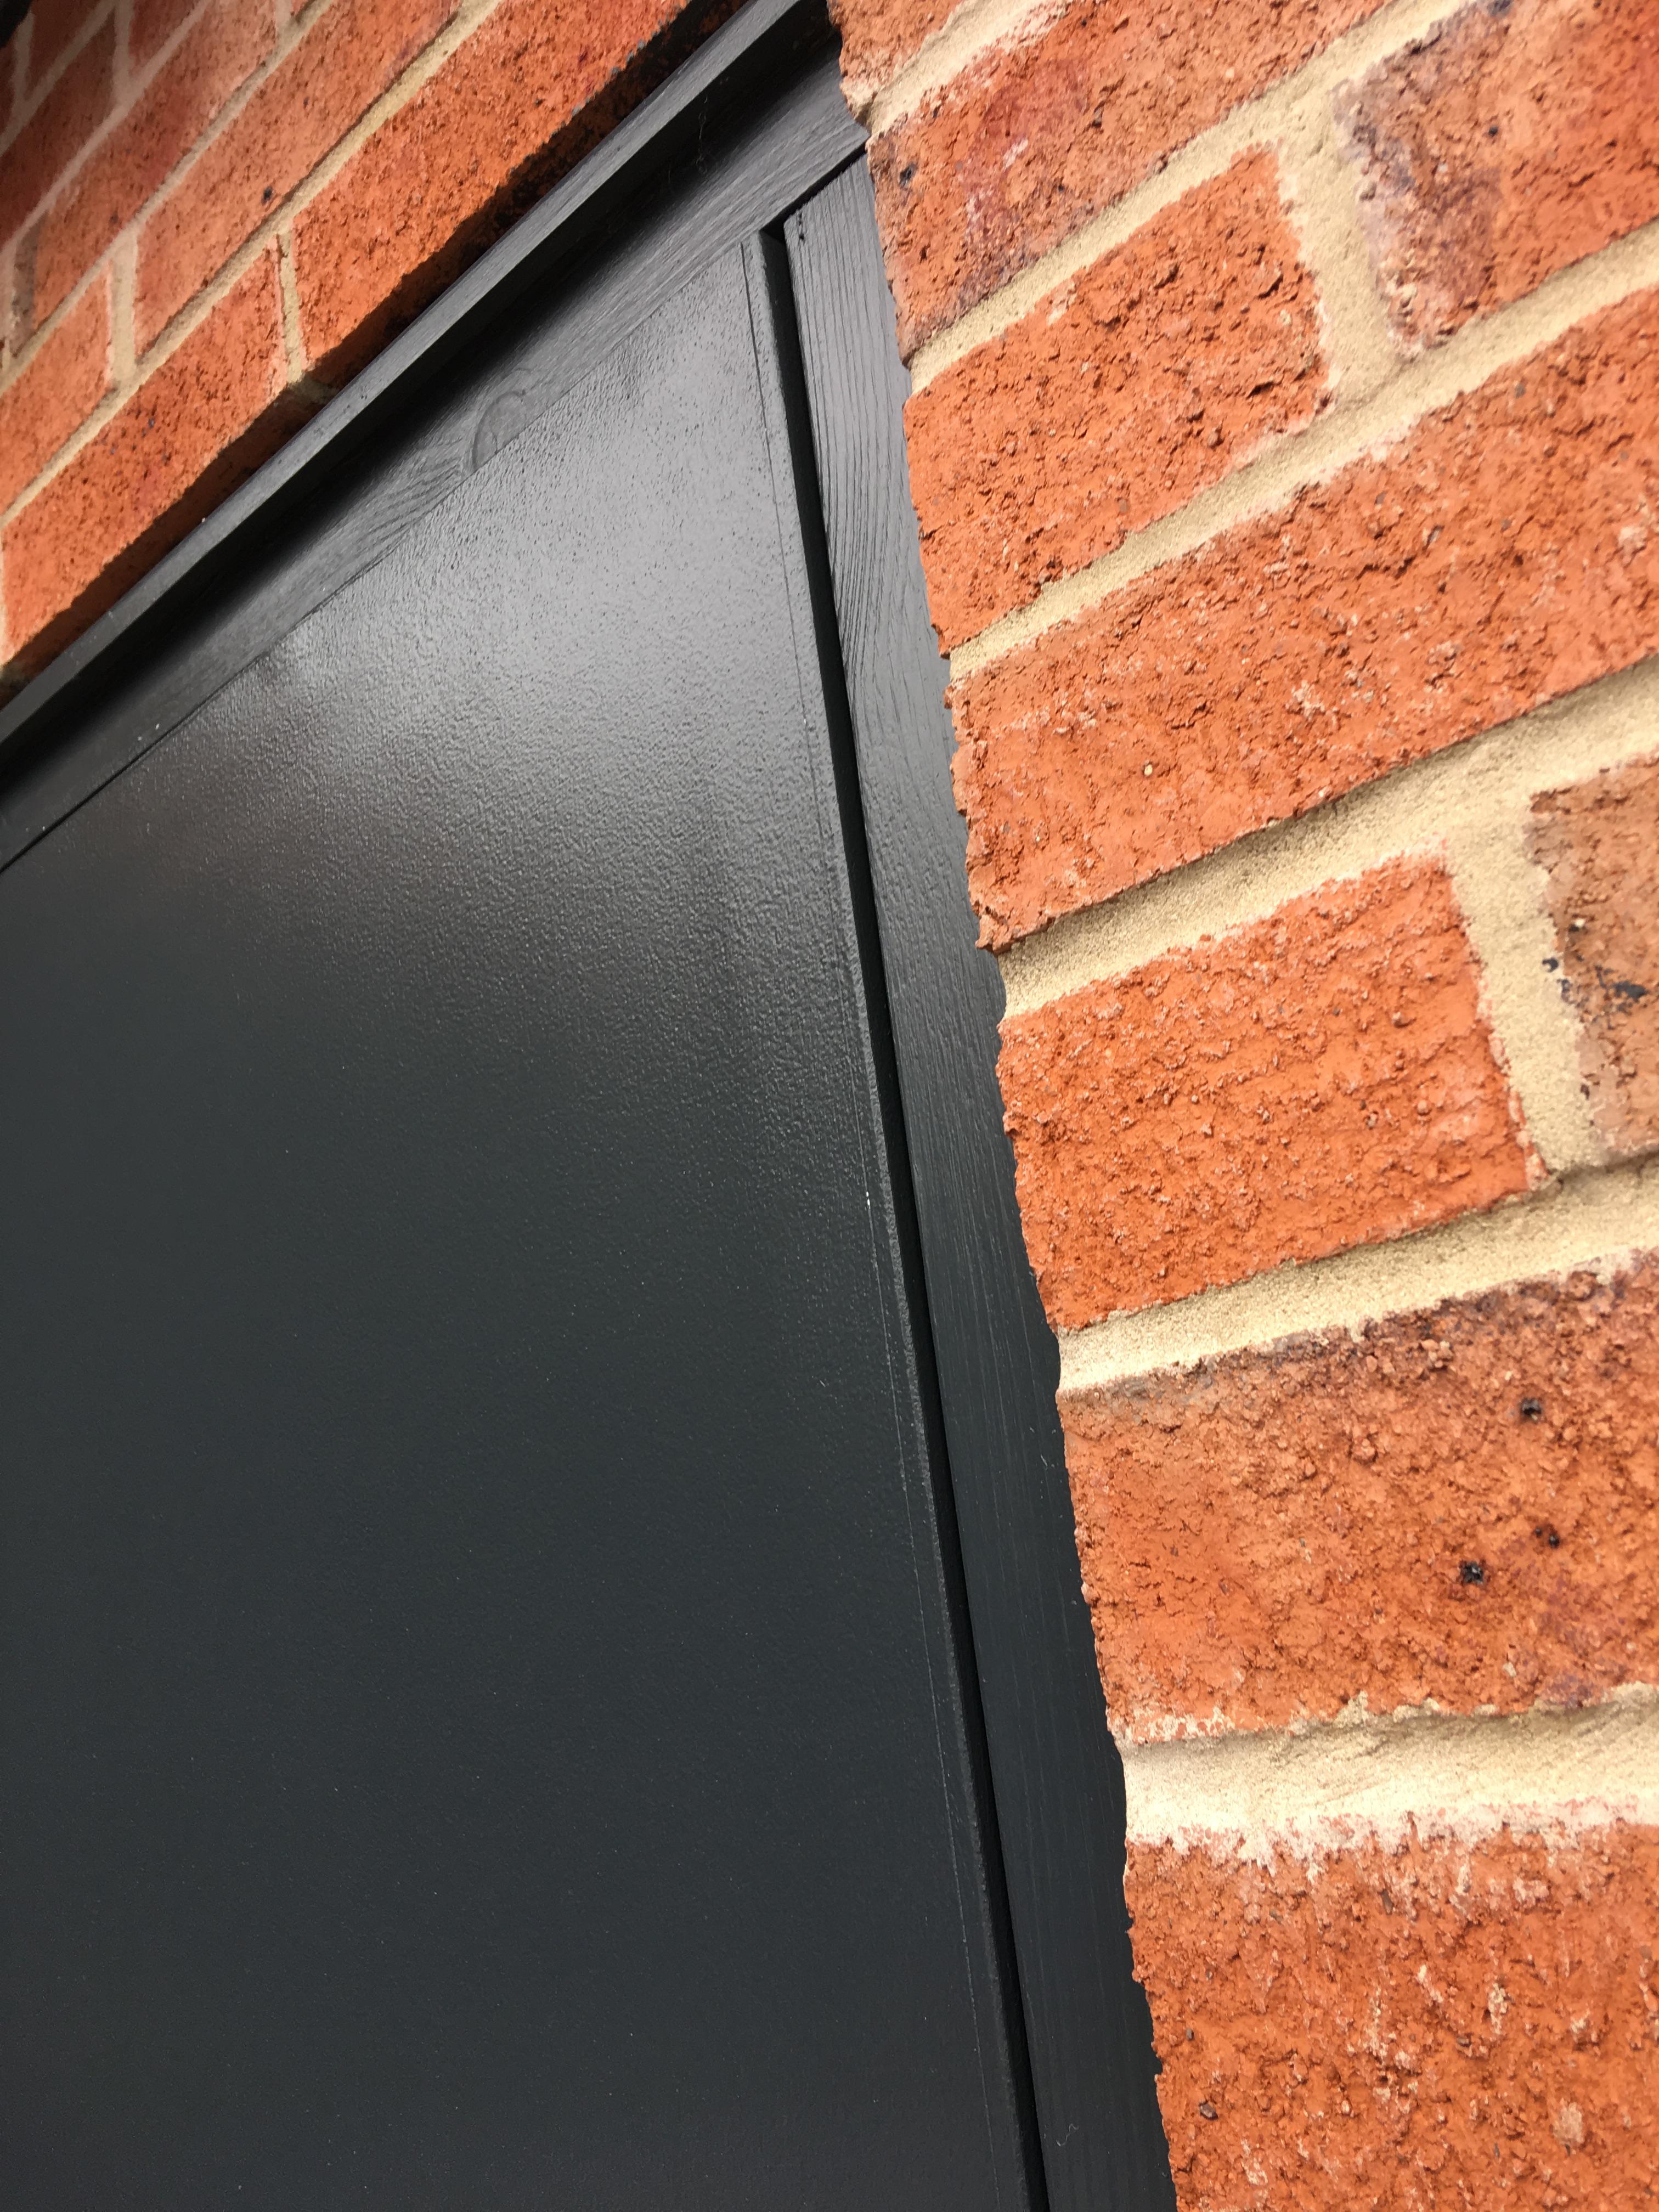 Garage Side Door Doors Frames, External Wooden Garage Side Door Replacement Cost